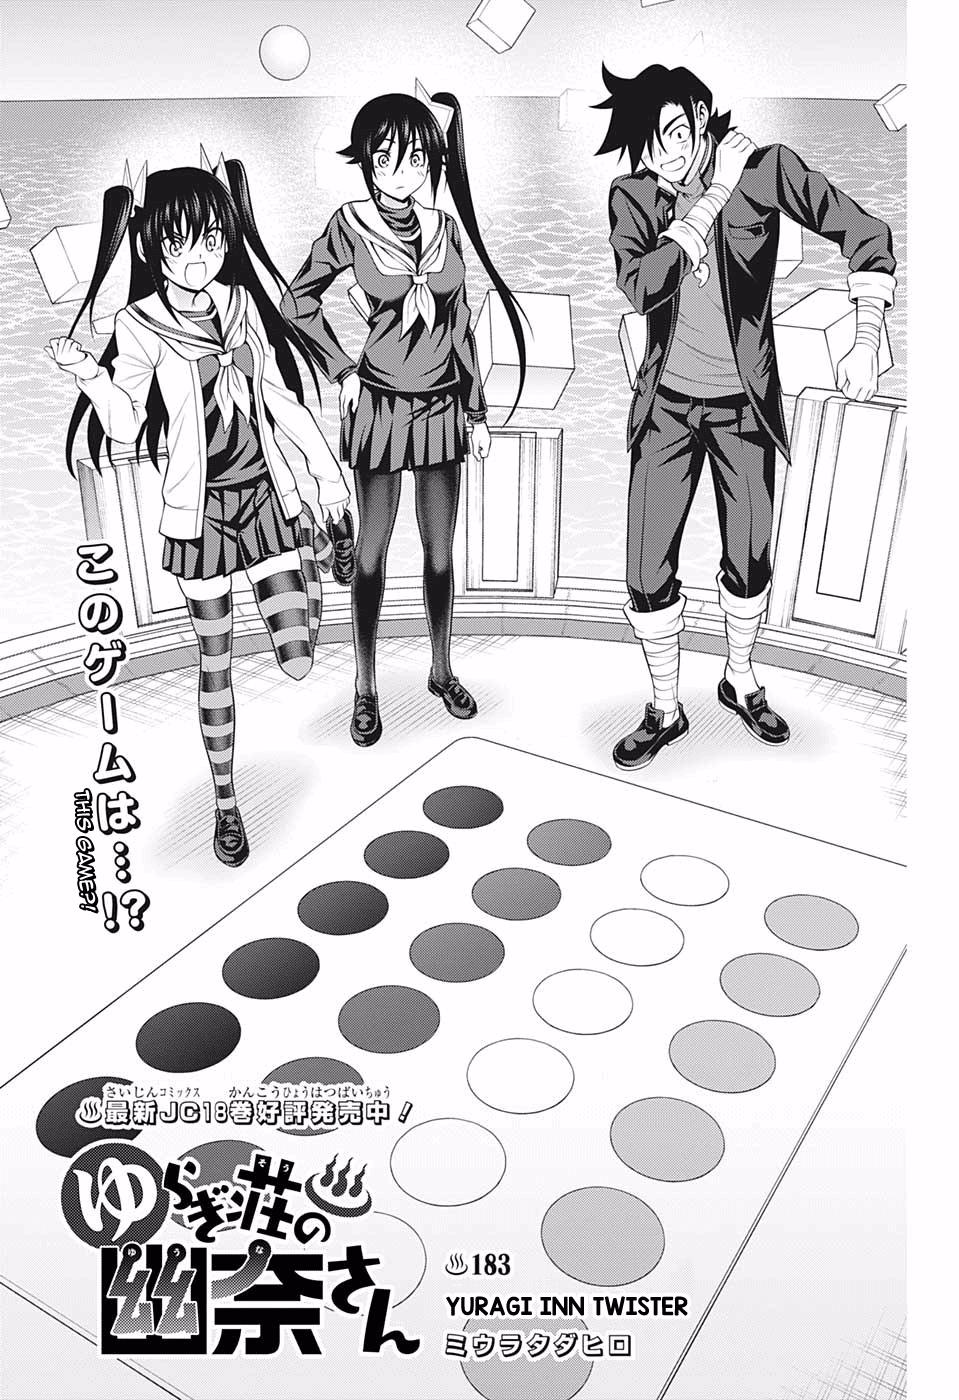 Read Yuragi-Sou No Yuuna-San Vol.24 Chapter 209: Yuragi Inn's Yuuna-San on  Mangakakalot